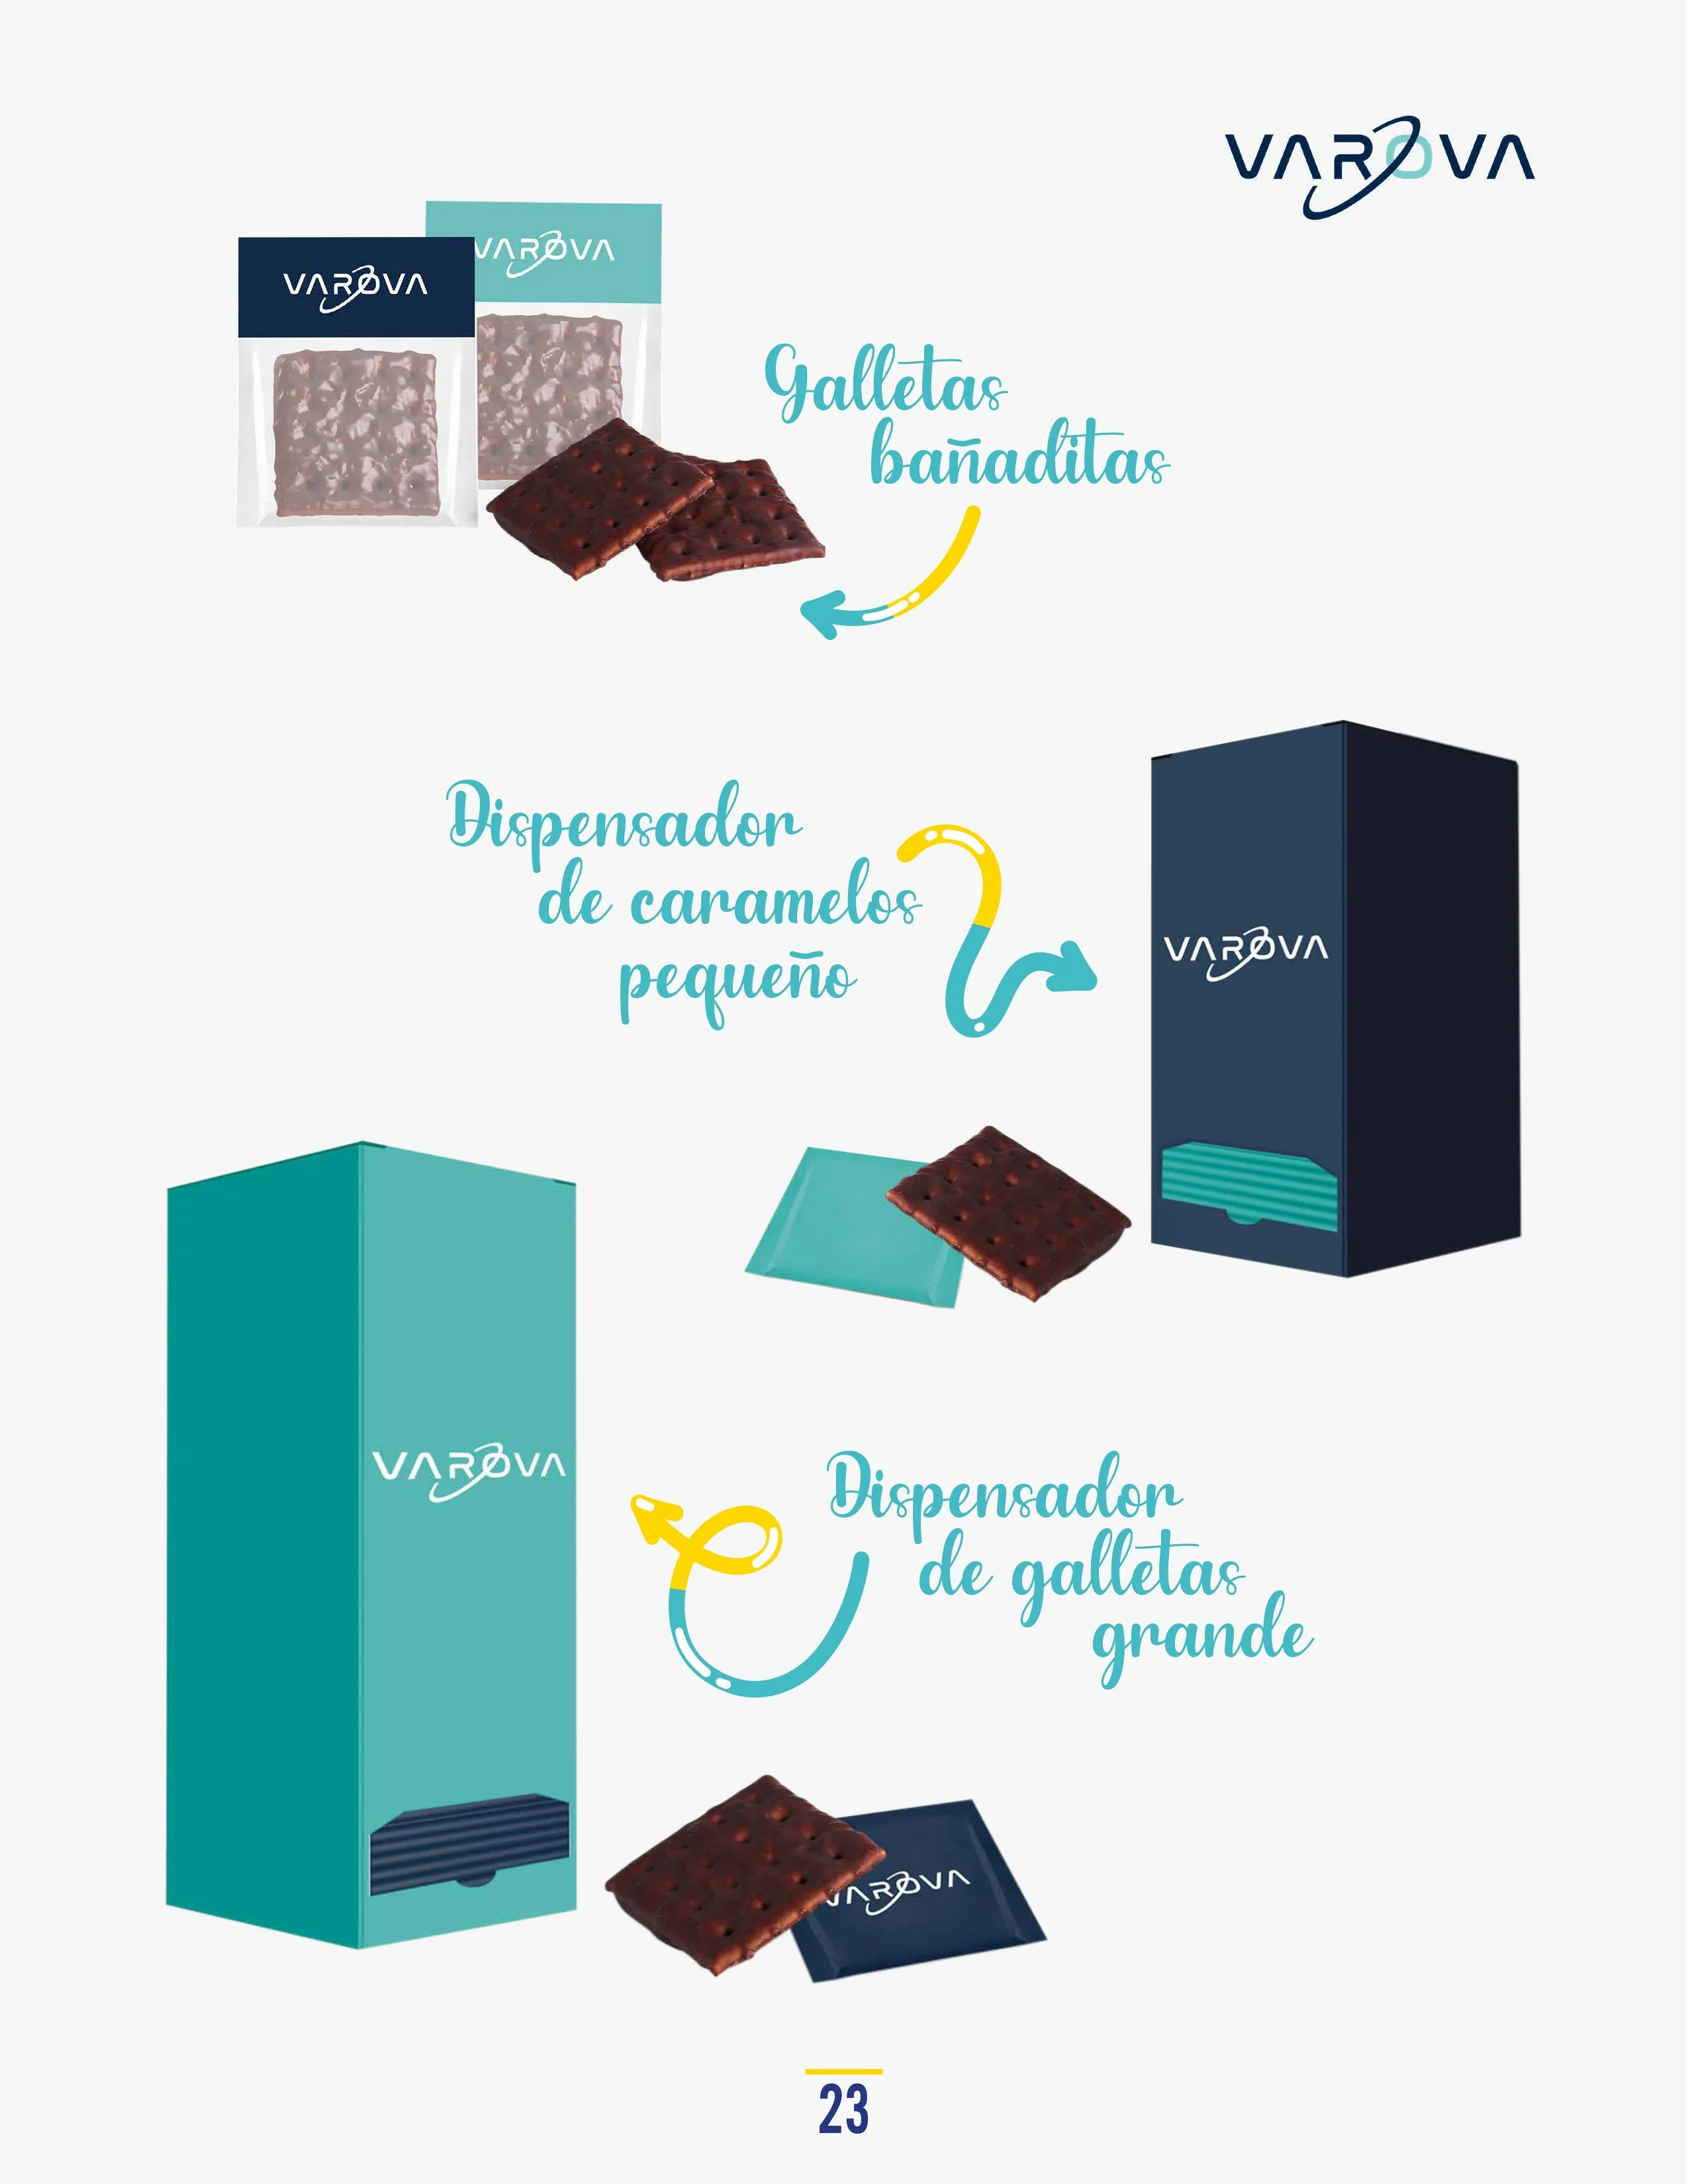 Catálogo de Productos Varova galletas banaditas dispensador galletas pequeno grande personalizados corporativos